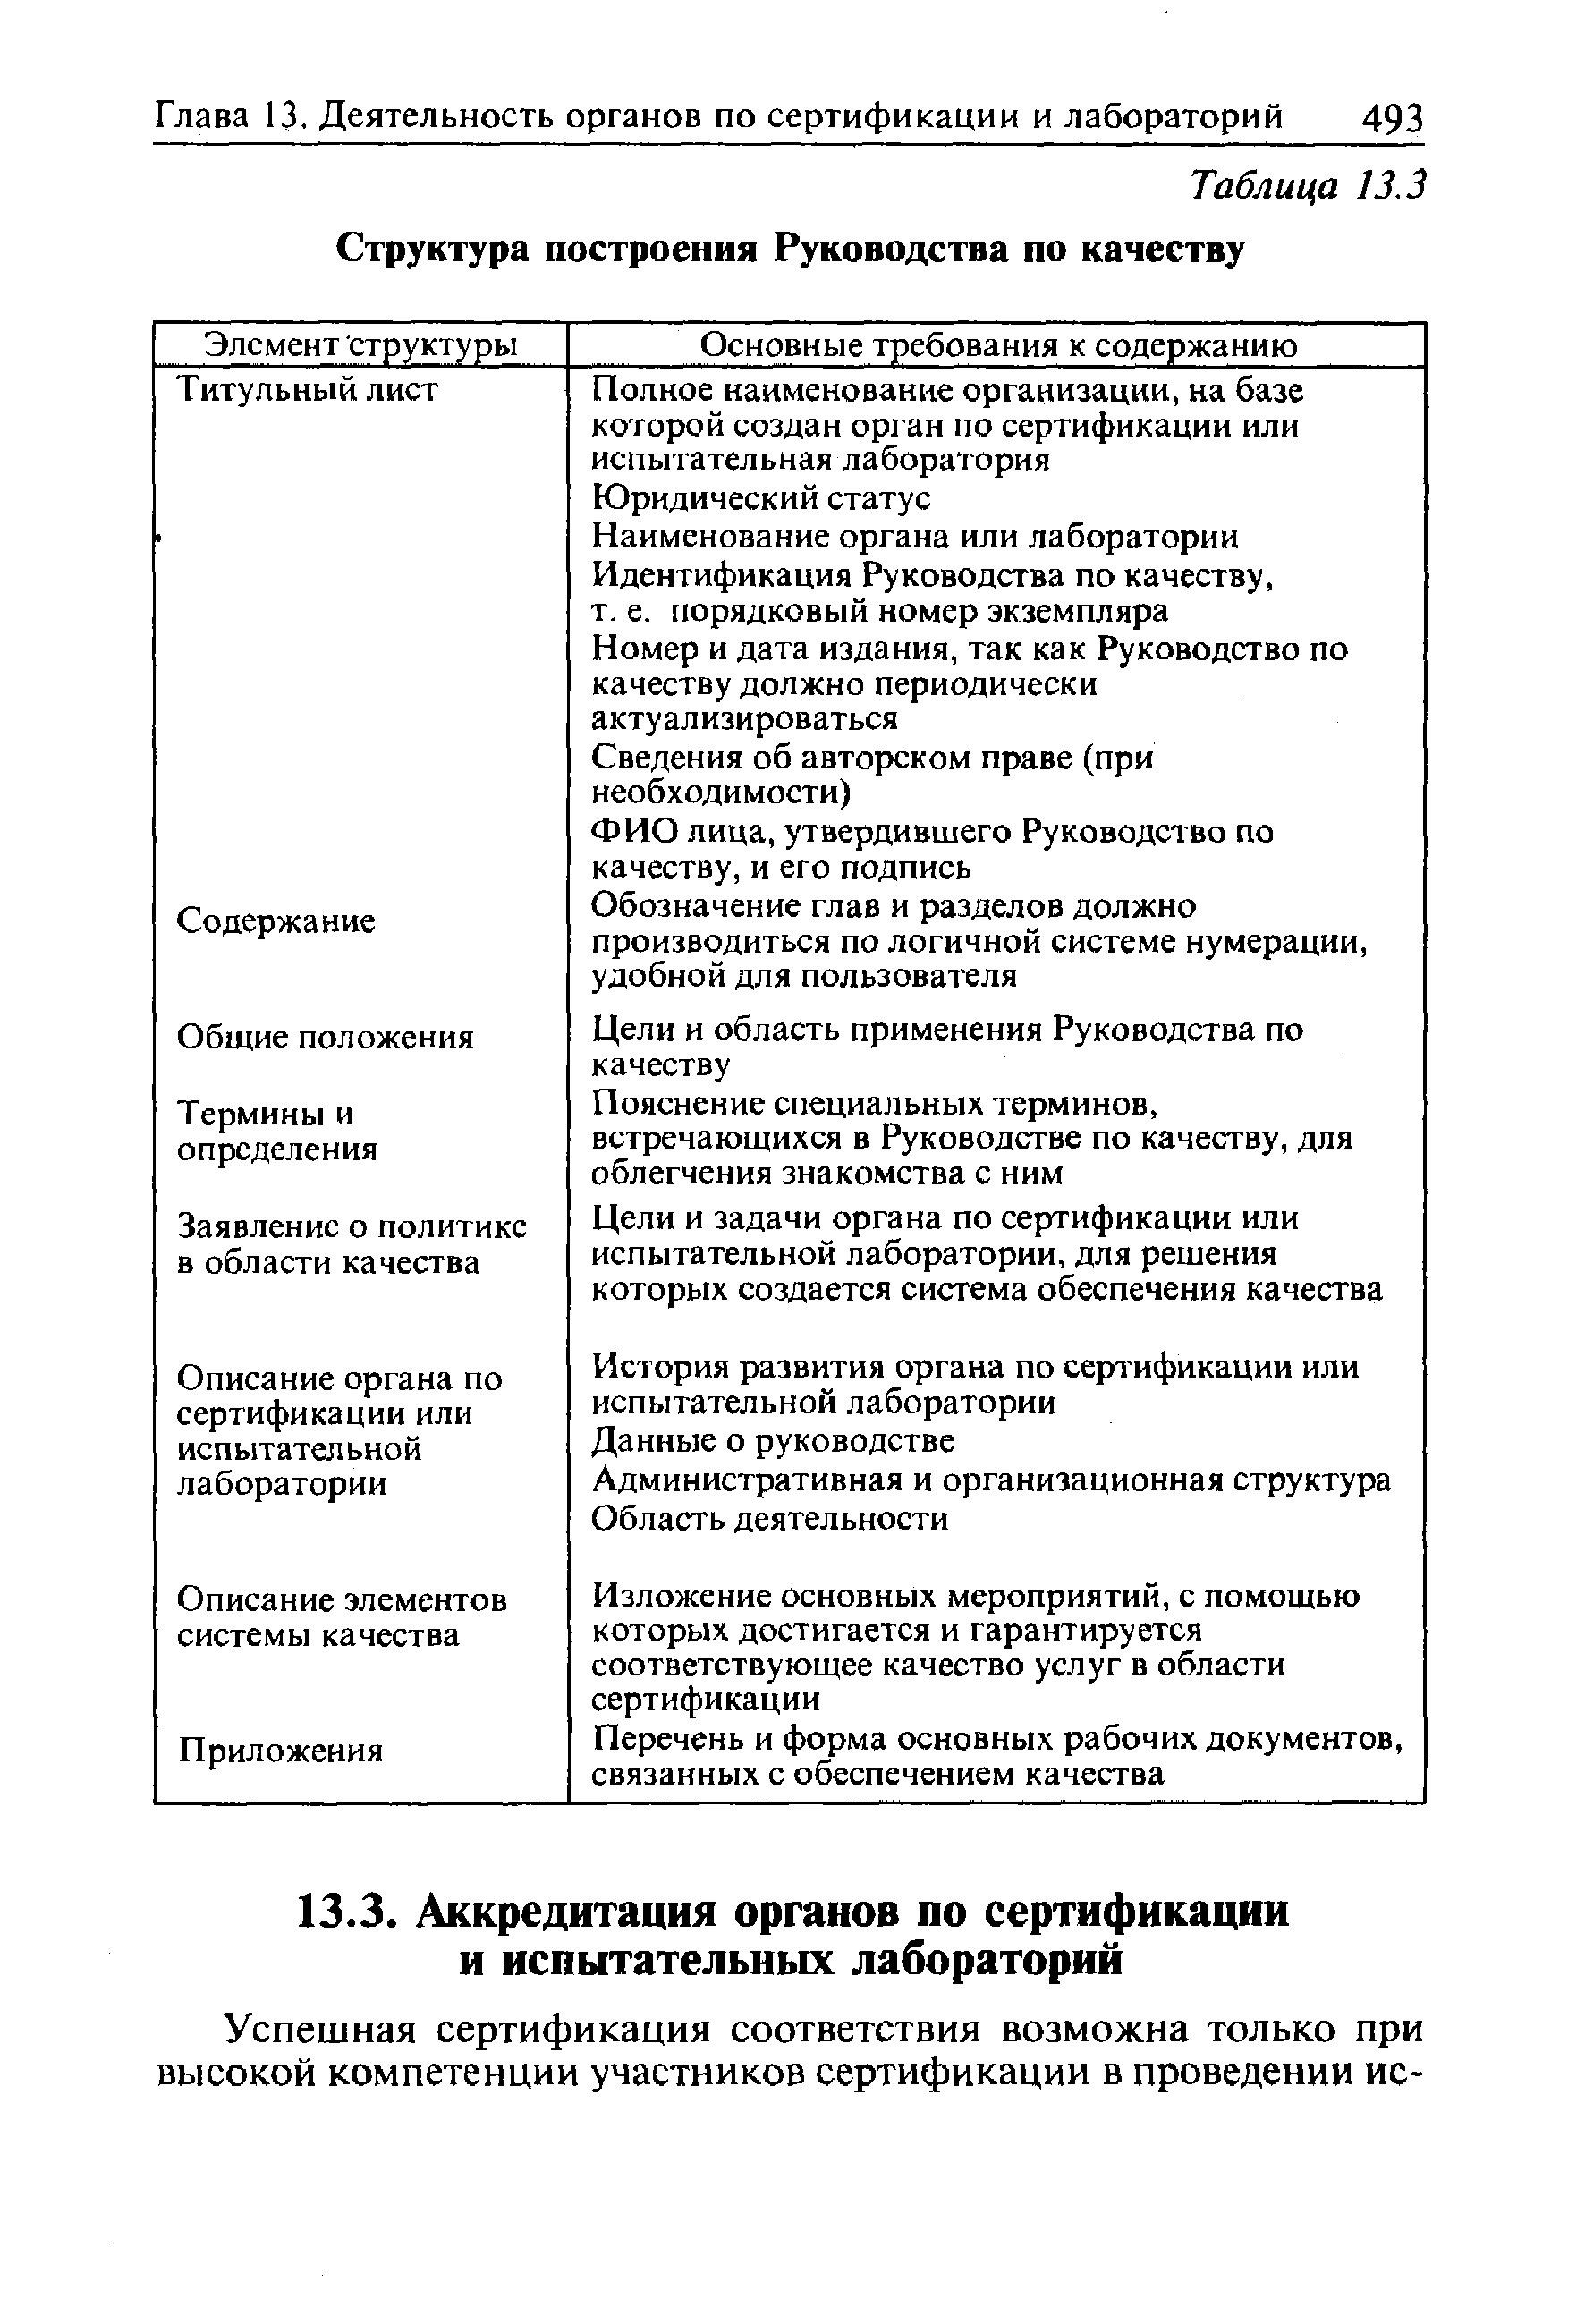 Таблица 13.3 Структура построения Руководства по качеству
